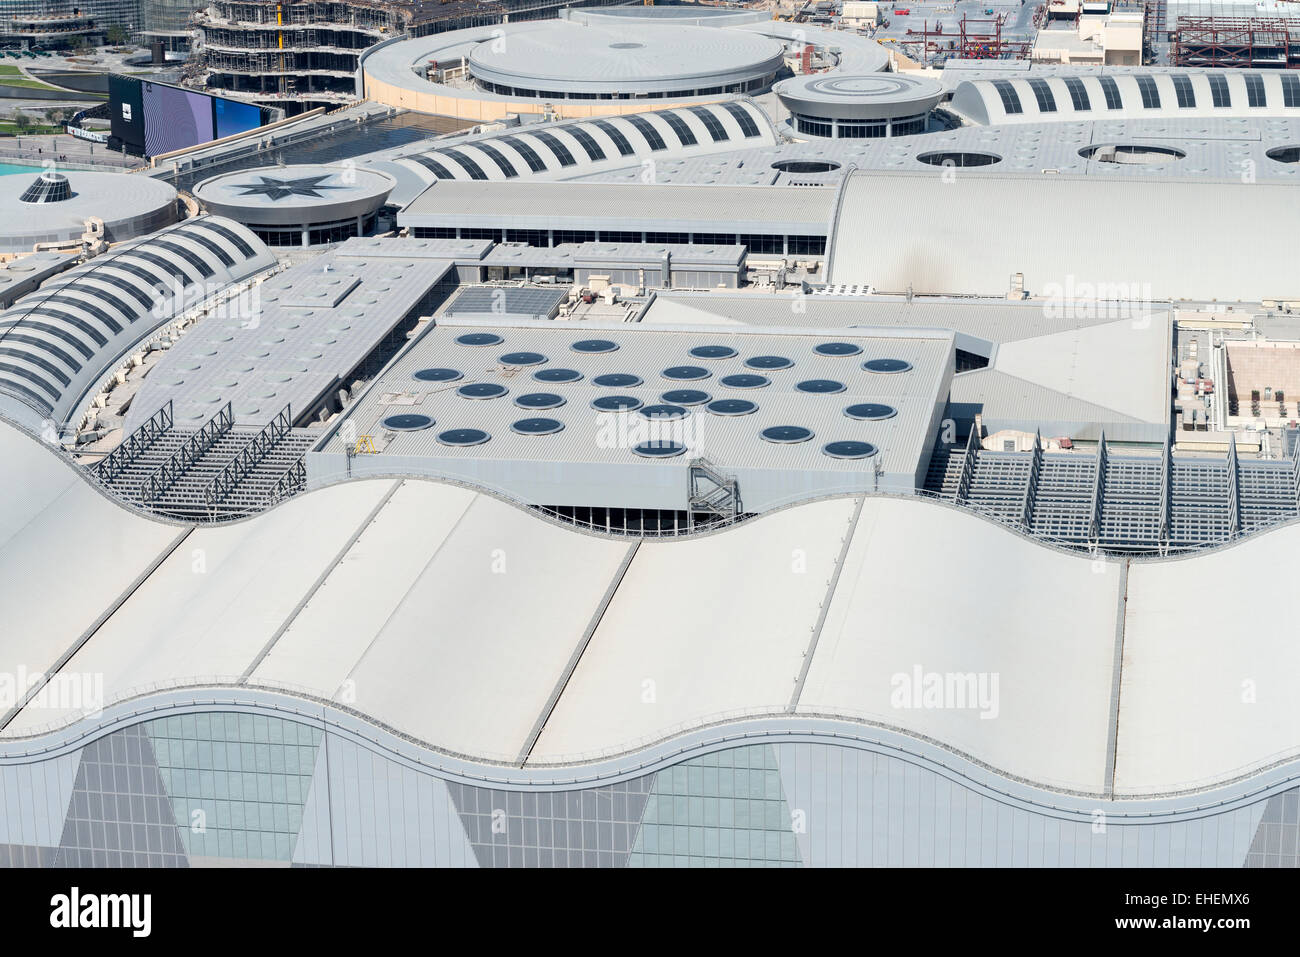 Vista del techo del centro comercial Dubai Mall en Dubai, Emiratos Árabes Unidos Foto de stock